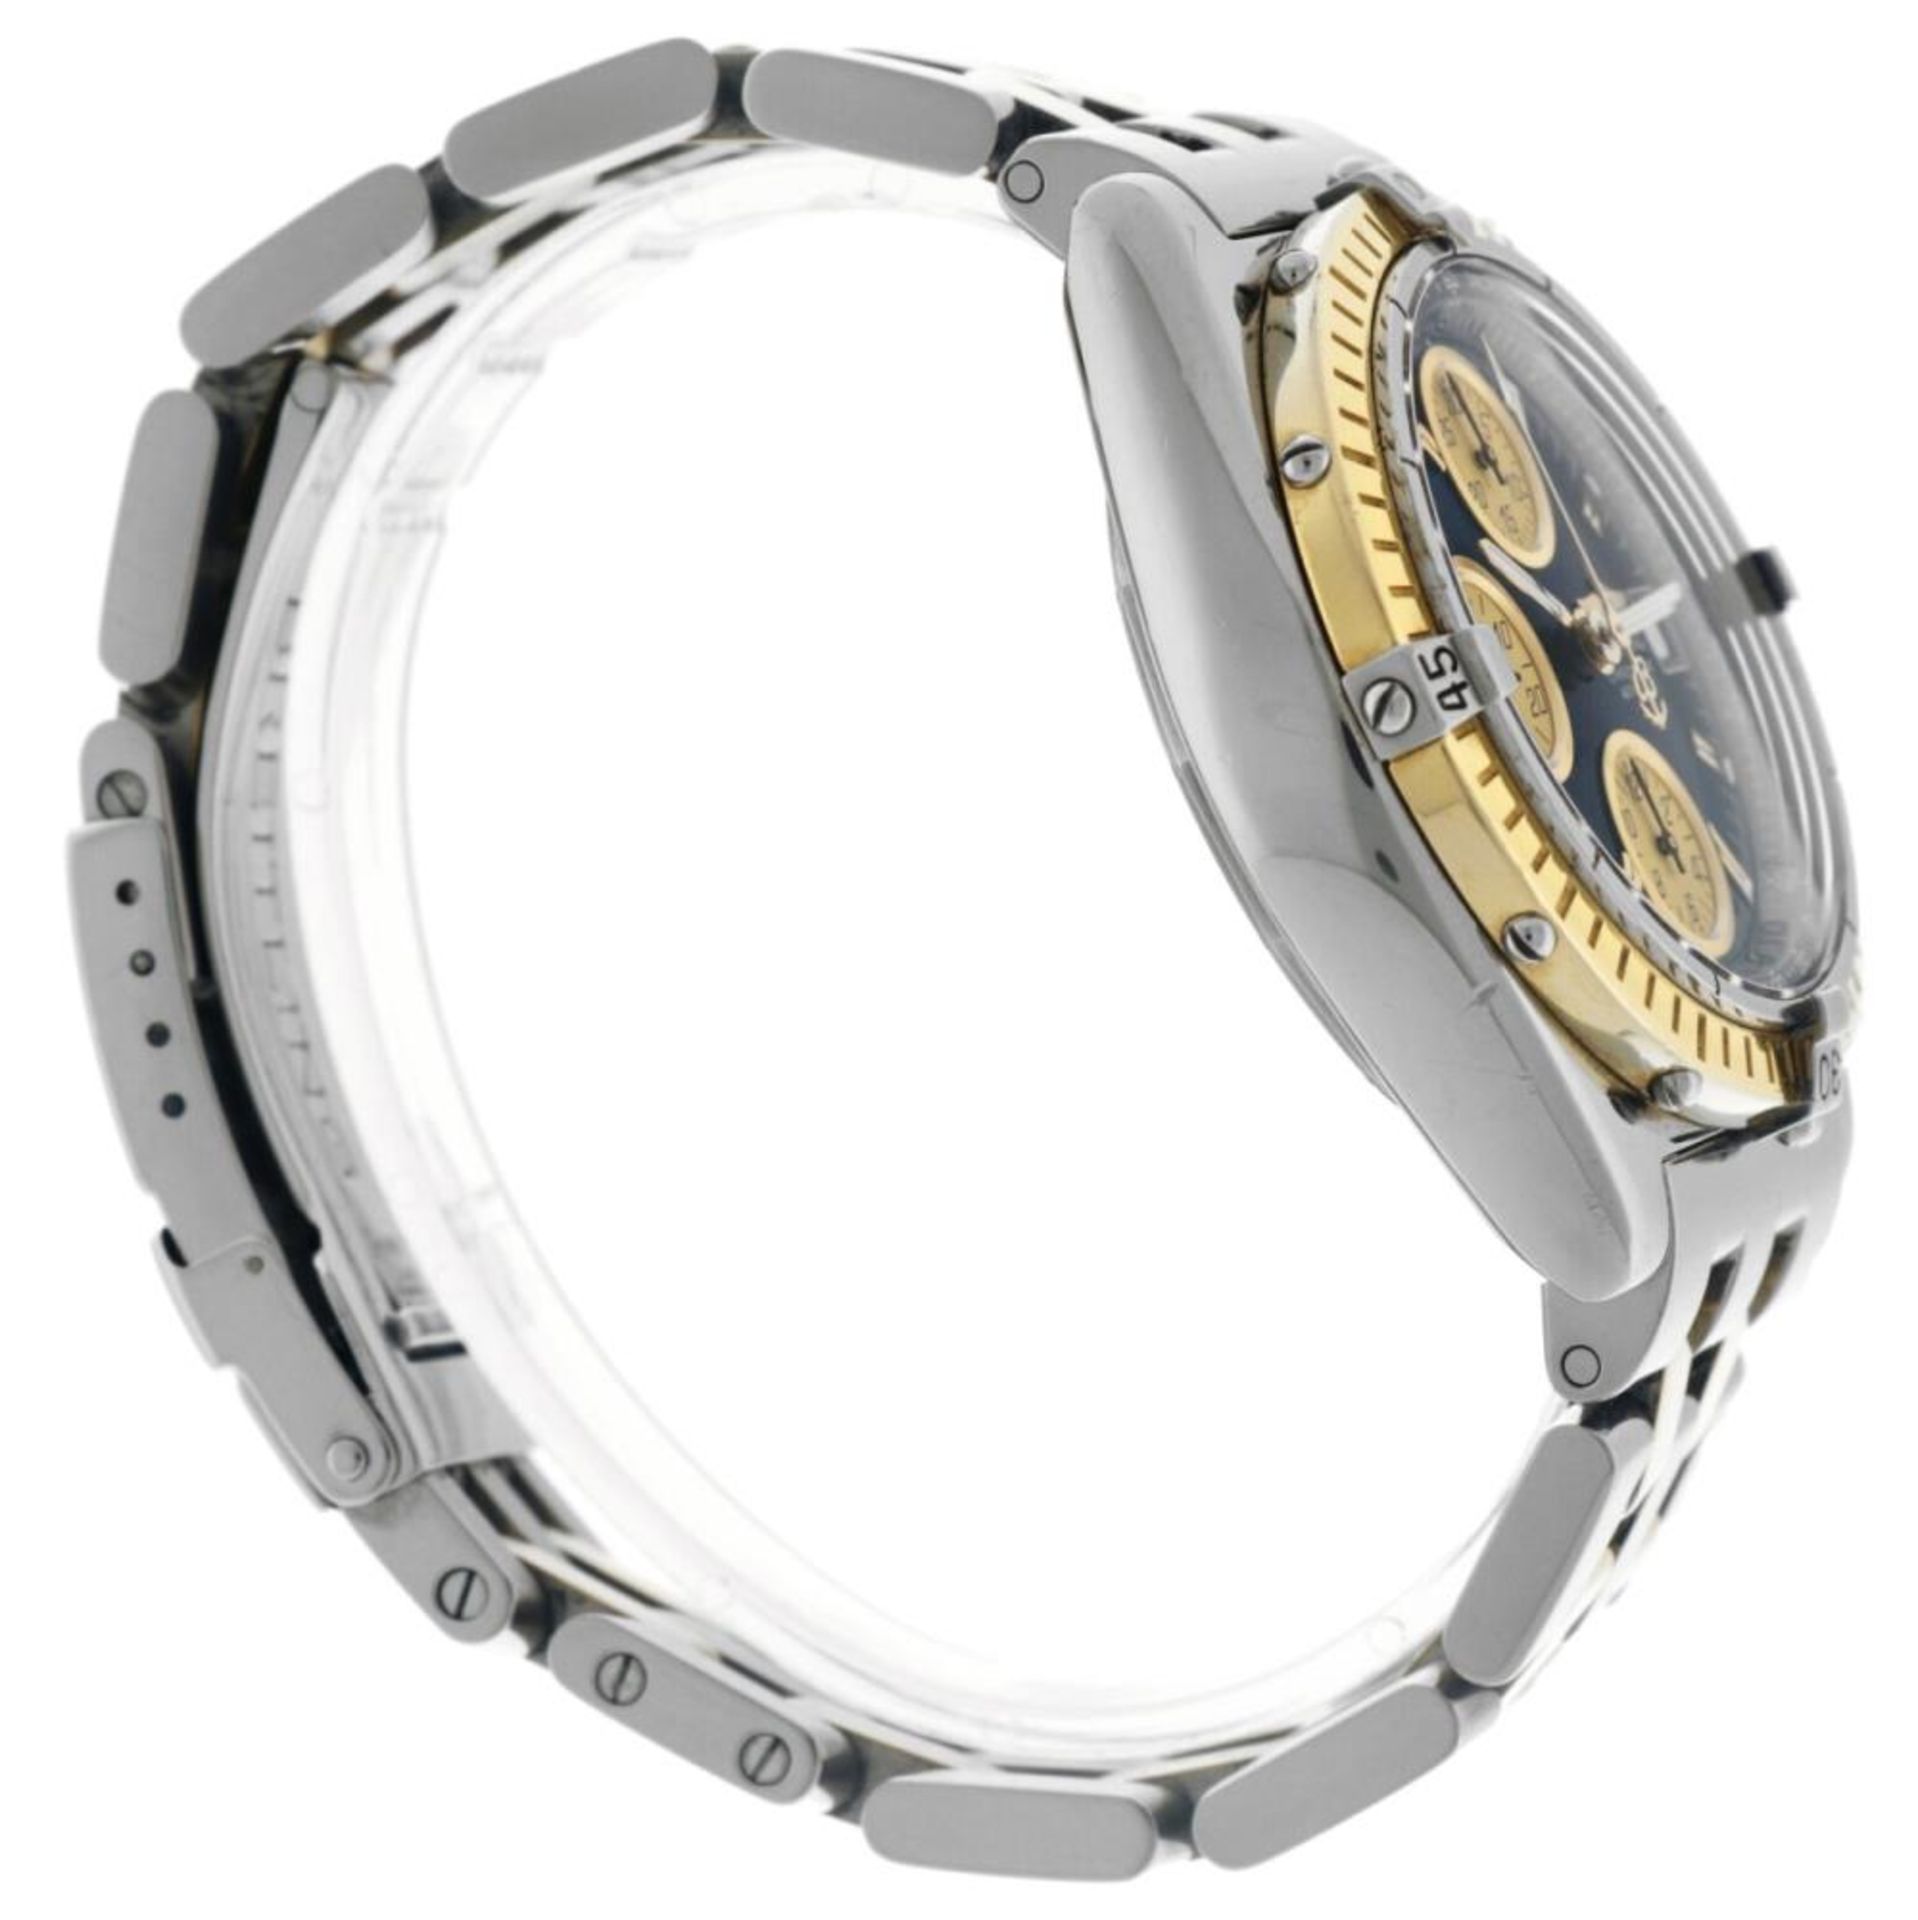 Breitling Chronomat D13350 - Men's watch - 2000. - Image 4 of 6